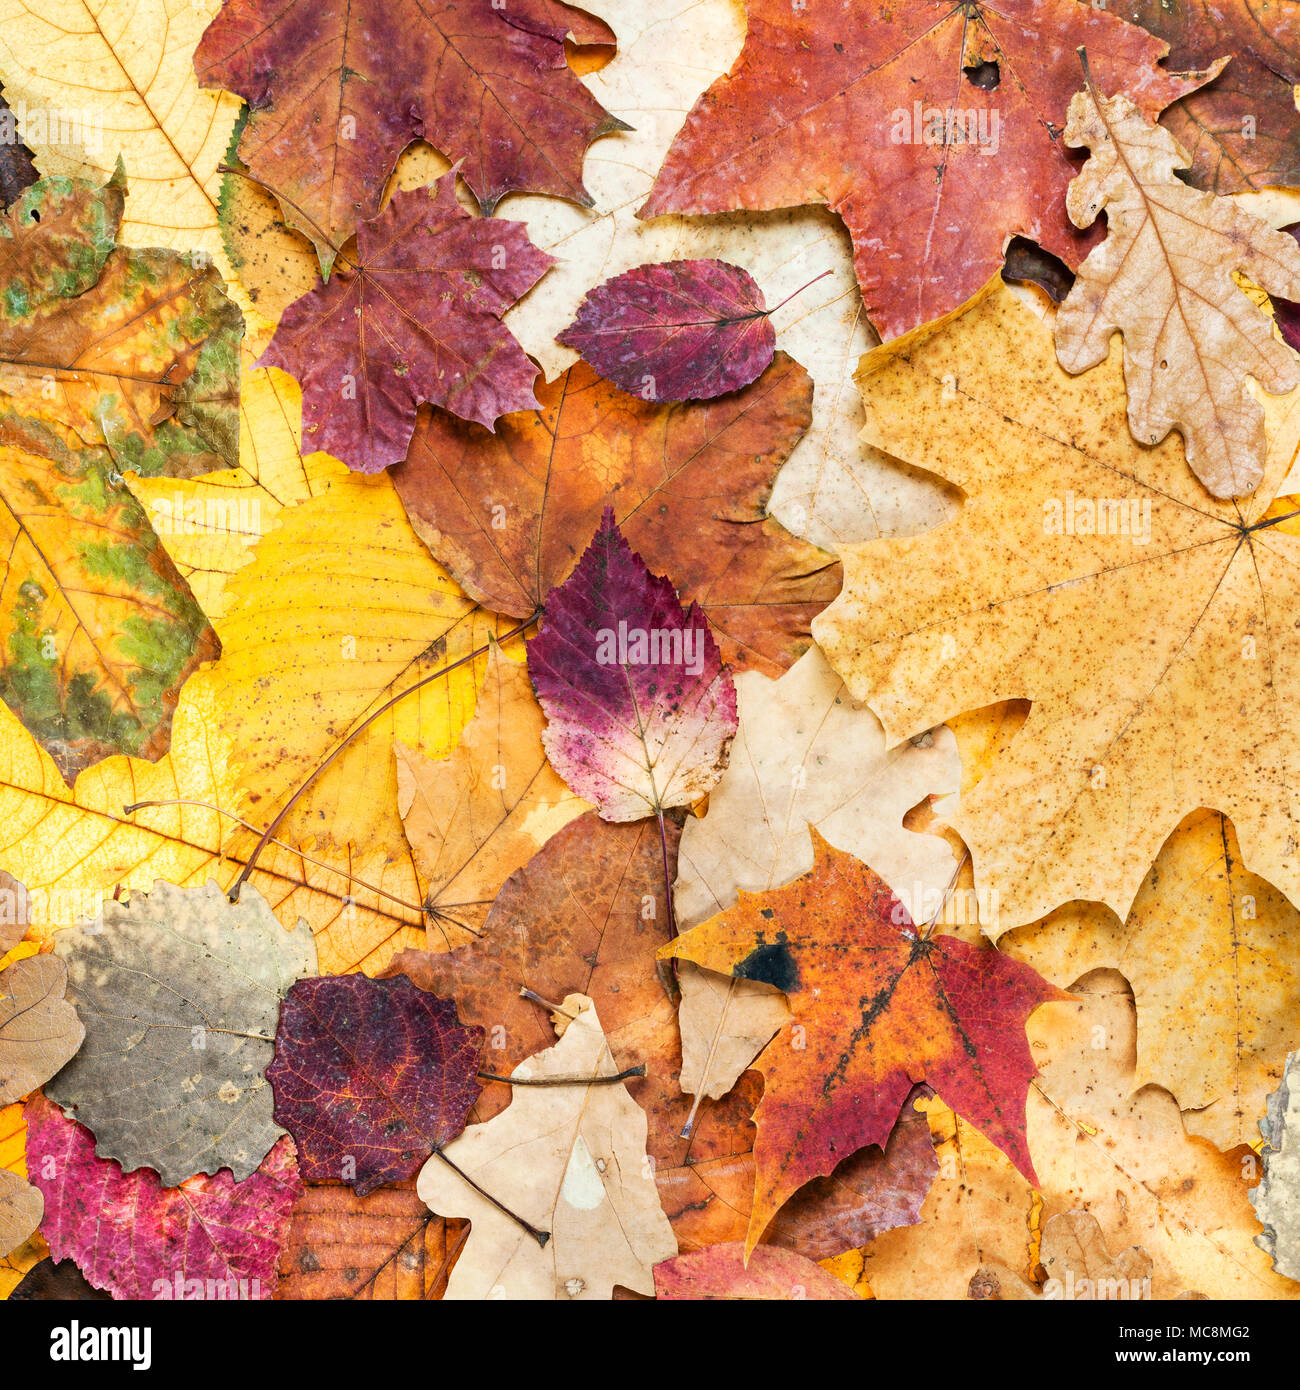 Natürliche Herbst Hintergrund aus verschiedenen Farbe Blätter von Eichen, Ahorn, Erle, Aspen Bäume Stockfoto